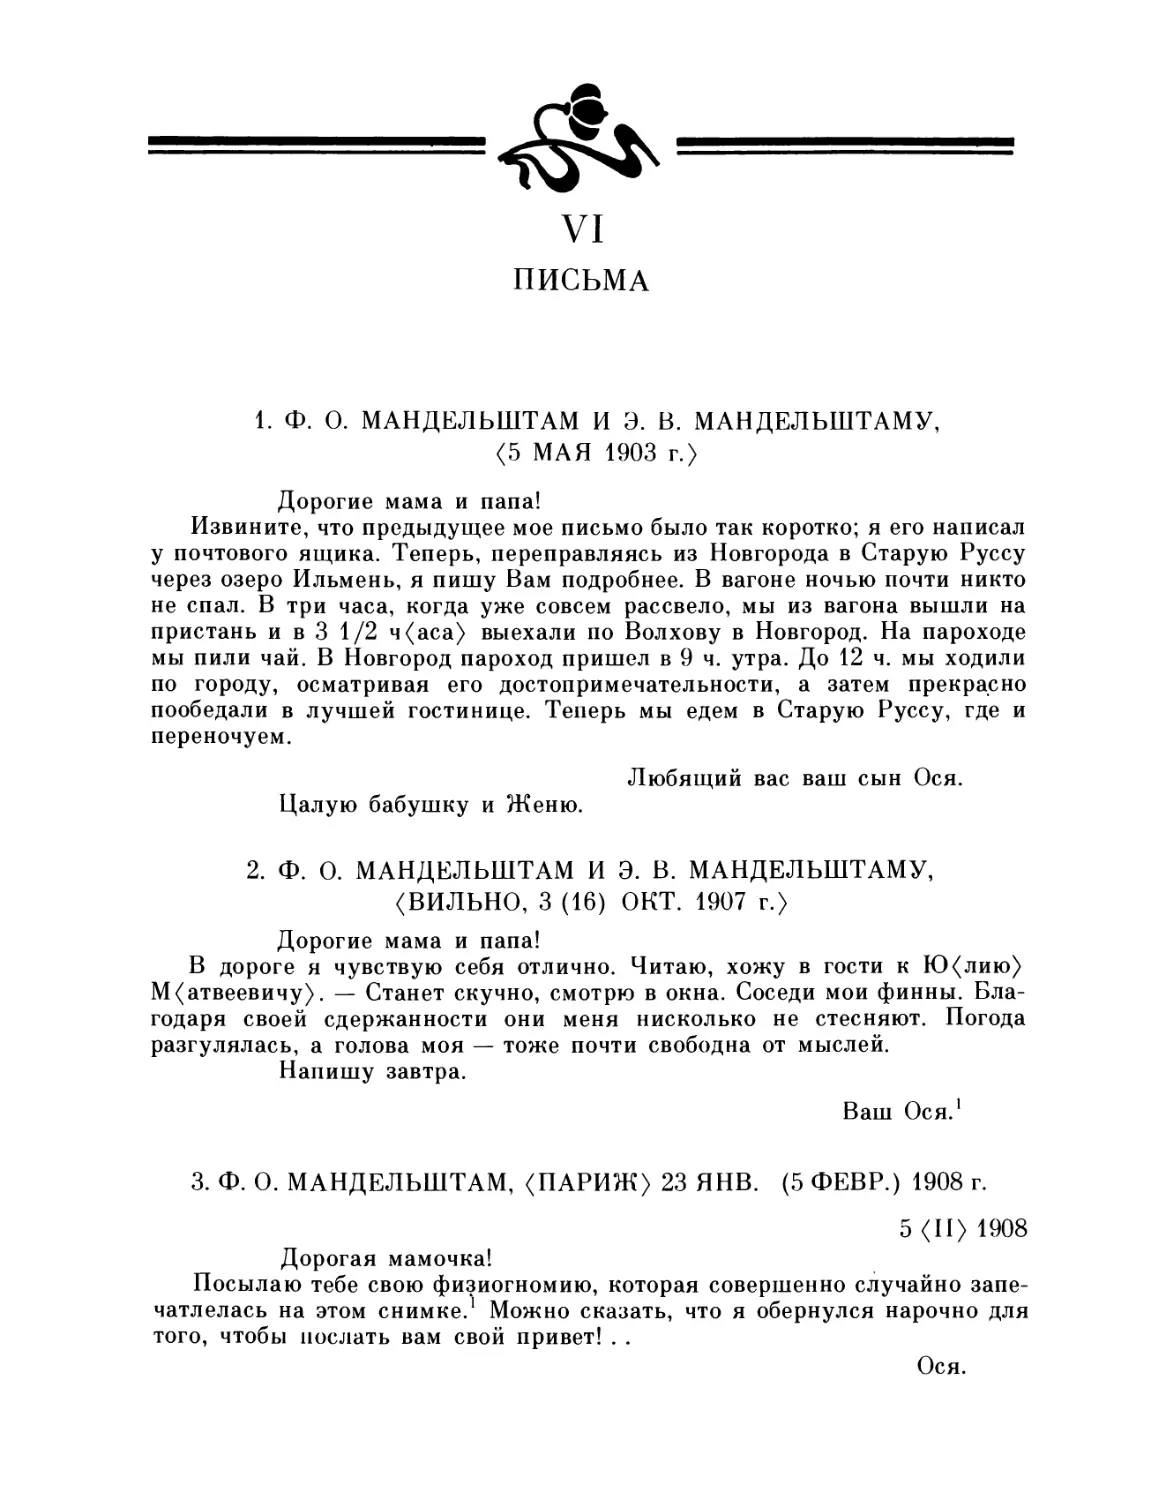 VI. Письма
2. Ф. О. и Э. В. Мандельштамам, 3.10.1907
3. Ф. О. Мандельштам, 23.1.1908